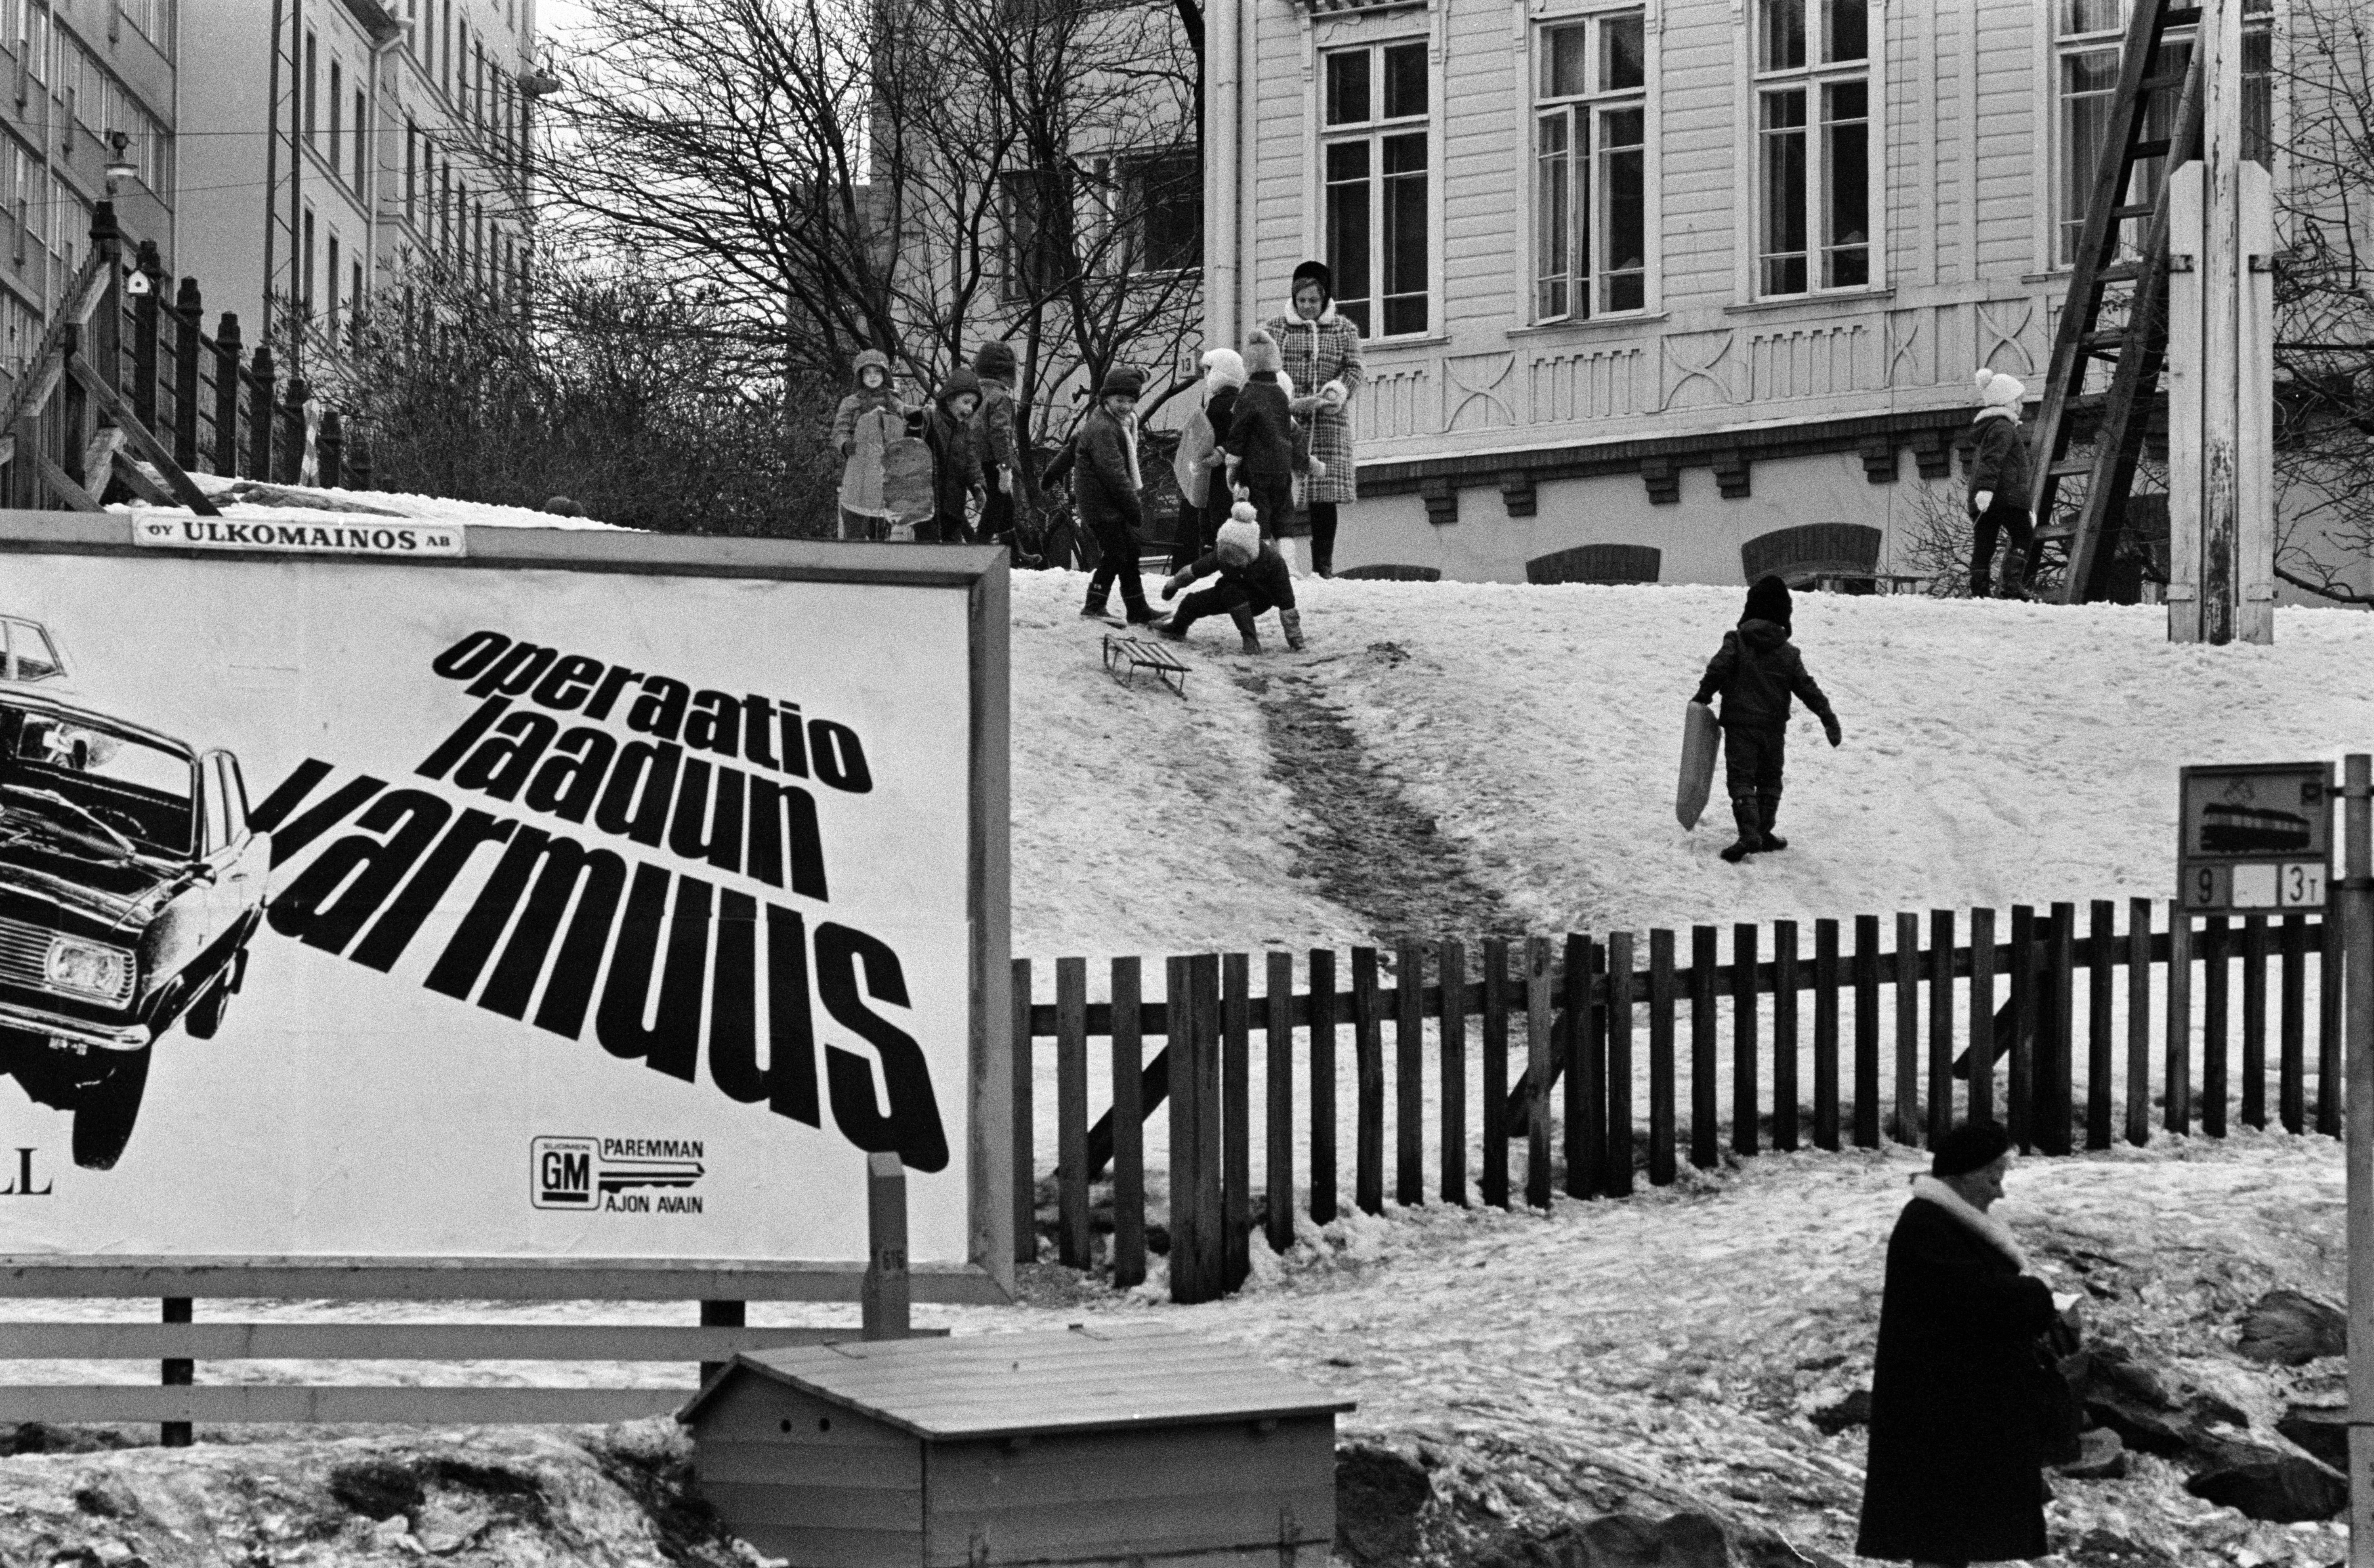 Vauxhall-automainos (Operaatio laadun varmuus) Porthaninkadun ja Siltasaarenkadun kulmassa. Taustalla lapsia laskemassa mäkeä puutalon, Tukholman päiväkodin pihalla. Kevät 1970.